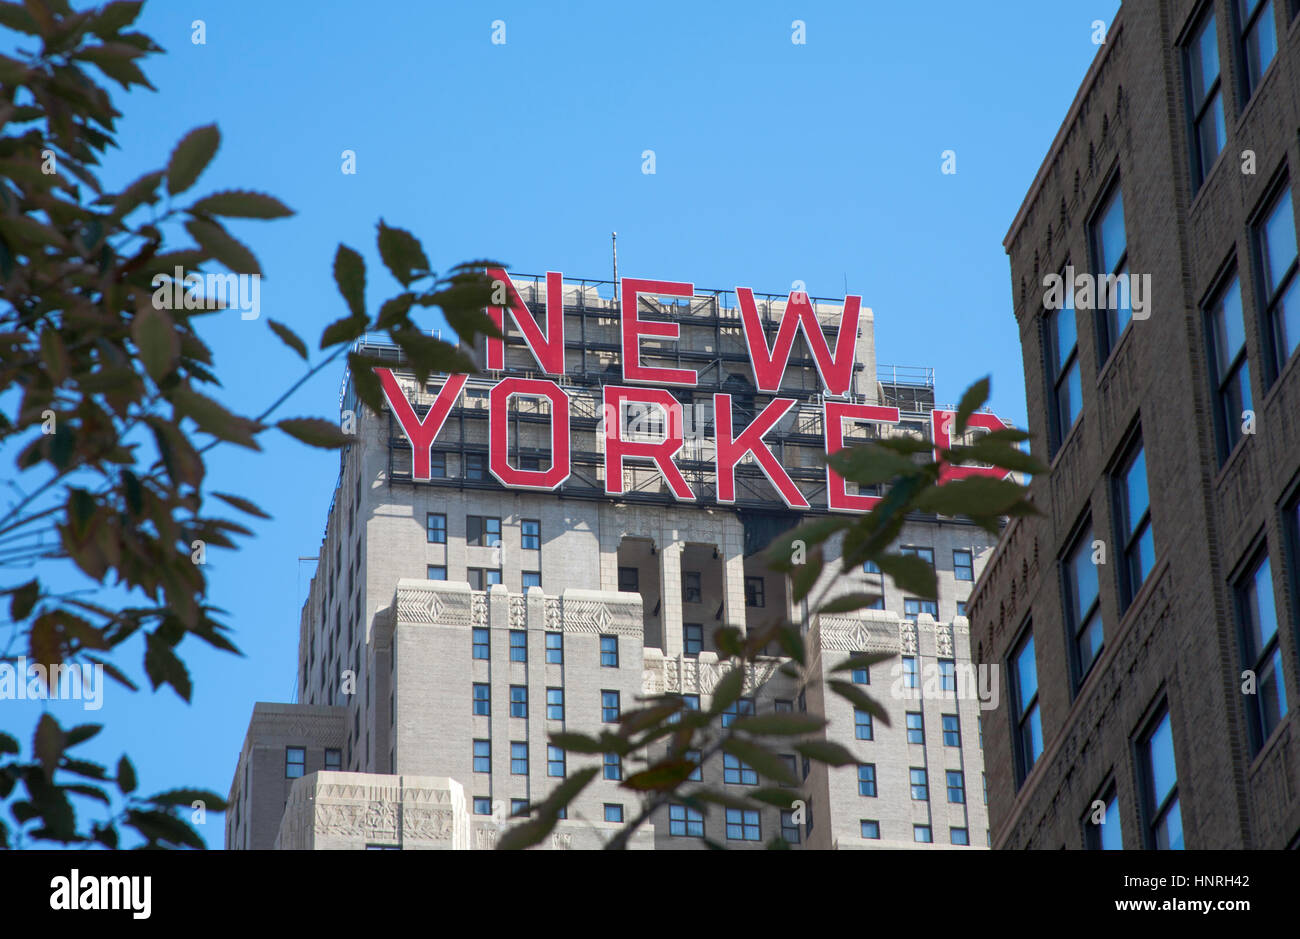 Le New Yorker enseigne lumineuse de la ligne élevée fonctionnant entre Chelsea et le Meatpacking district manhattan new york usa Banque D'Images